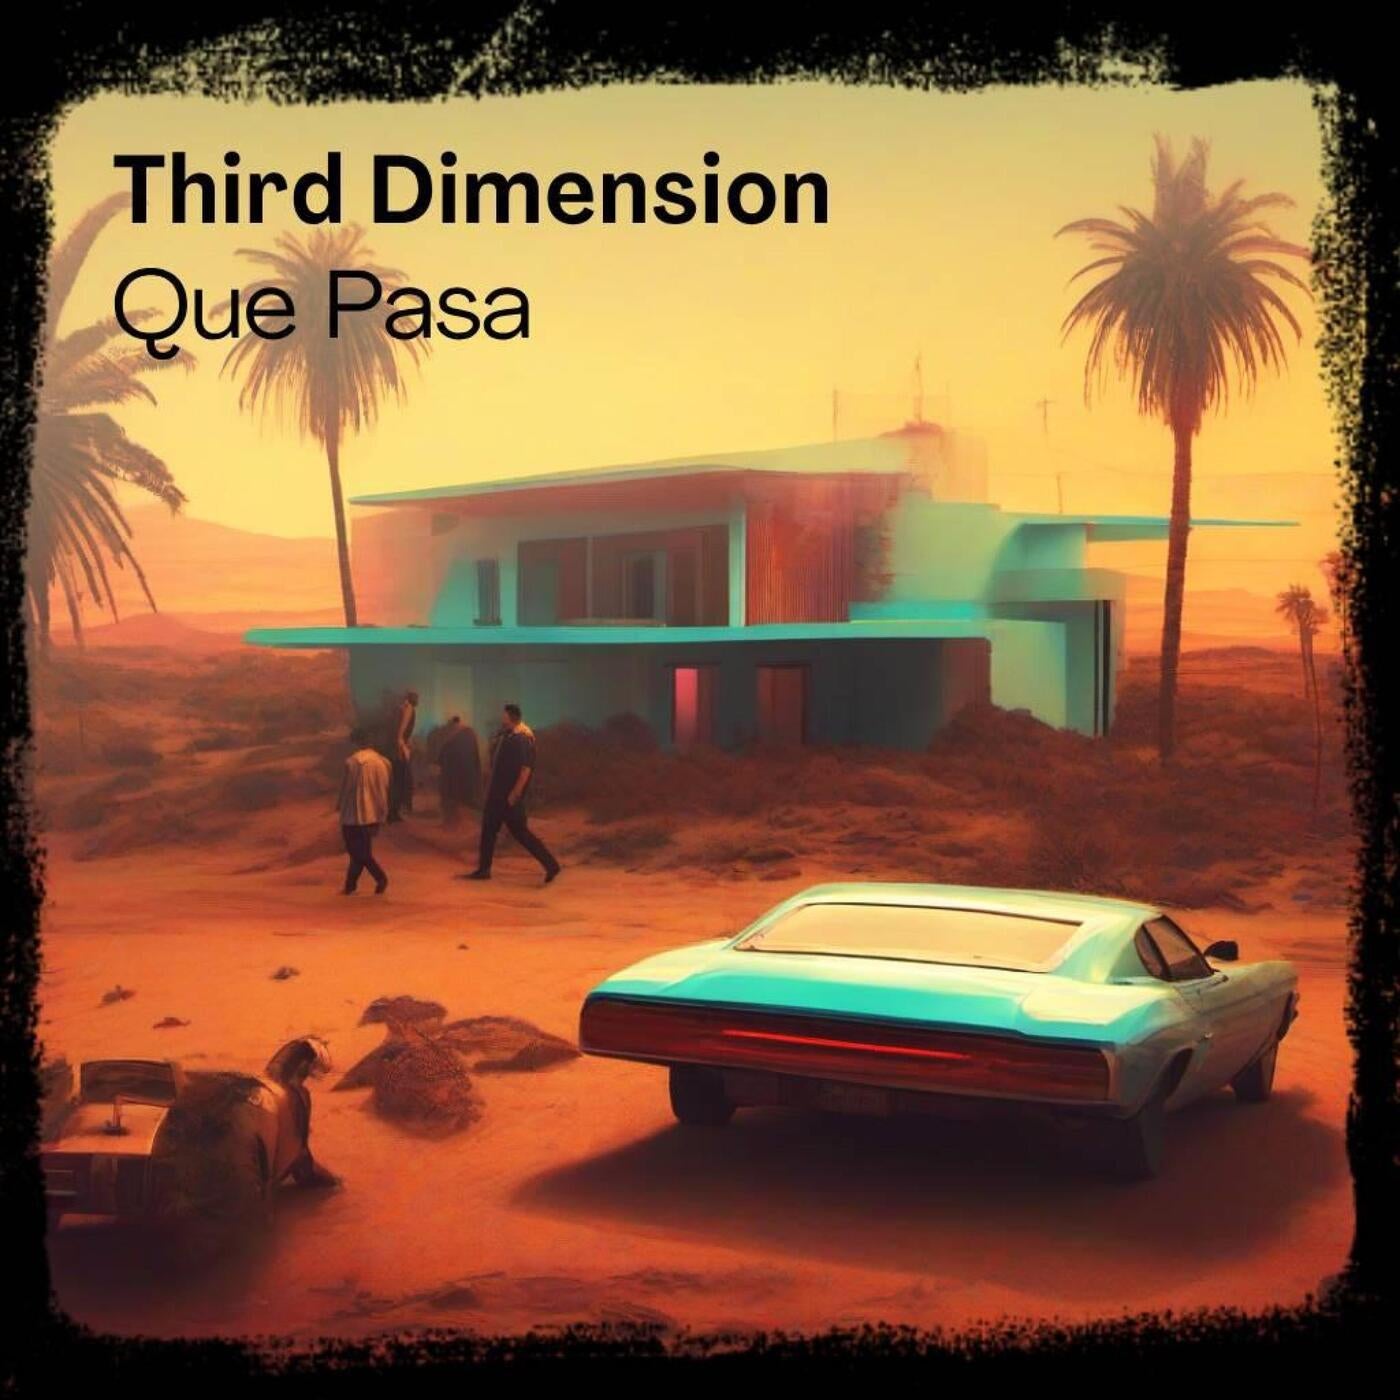 Cover - Third Dimension - Que Pasa (Original Mix)